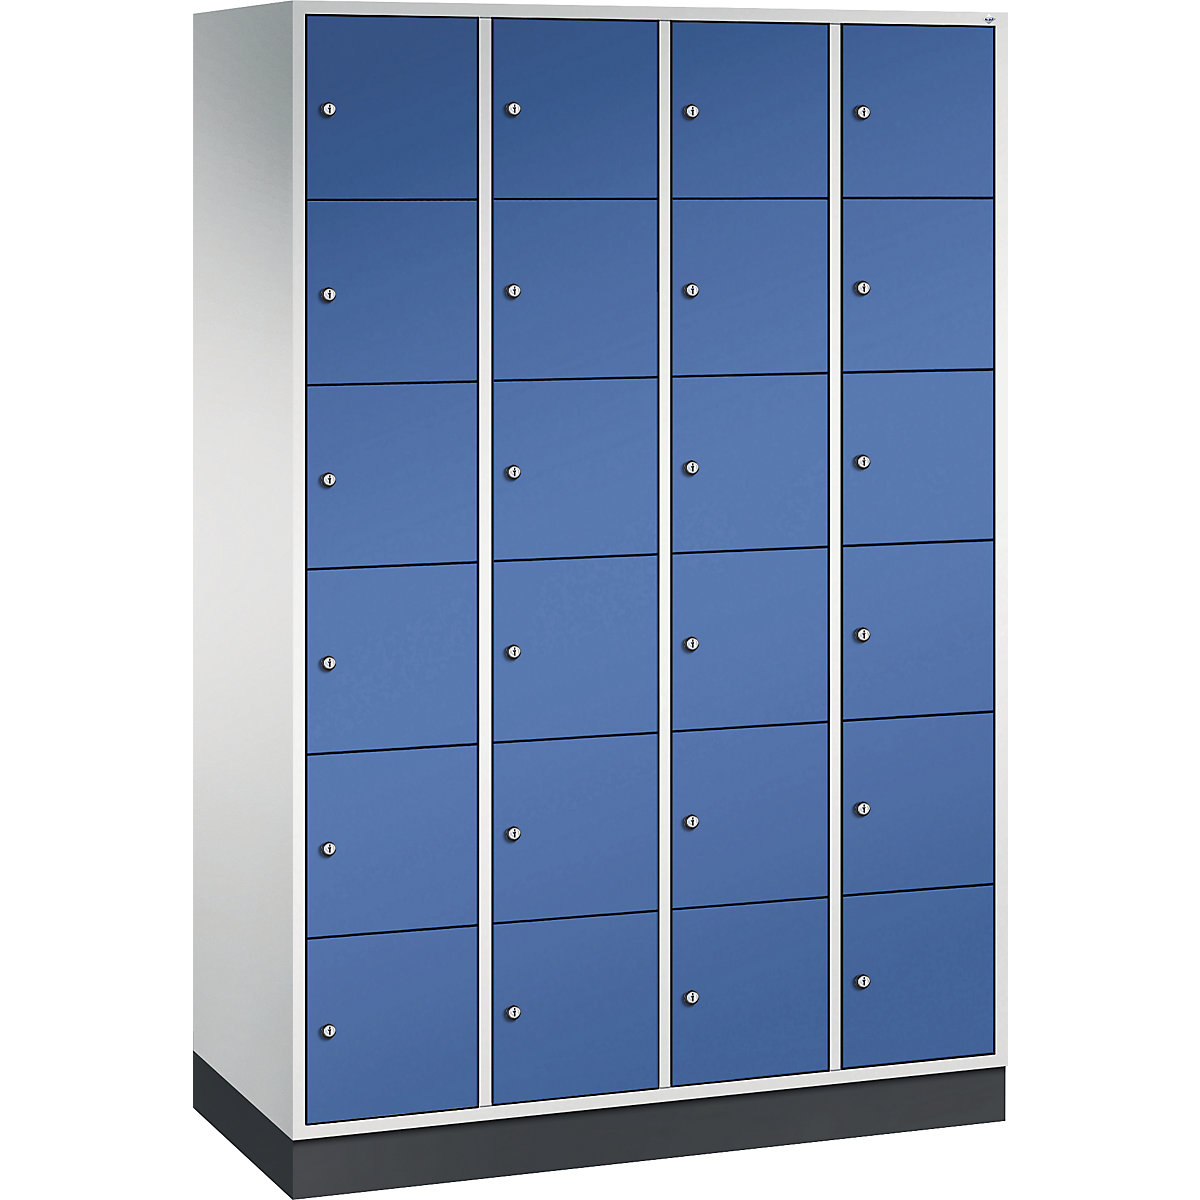 Vestiaire multicases en acier INTRO, casiers hauteur 285 mm – C+P, l x p 1220 x 500 mm, 24 casiers, corps gris clair, portes bleu gentiane-13